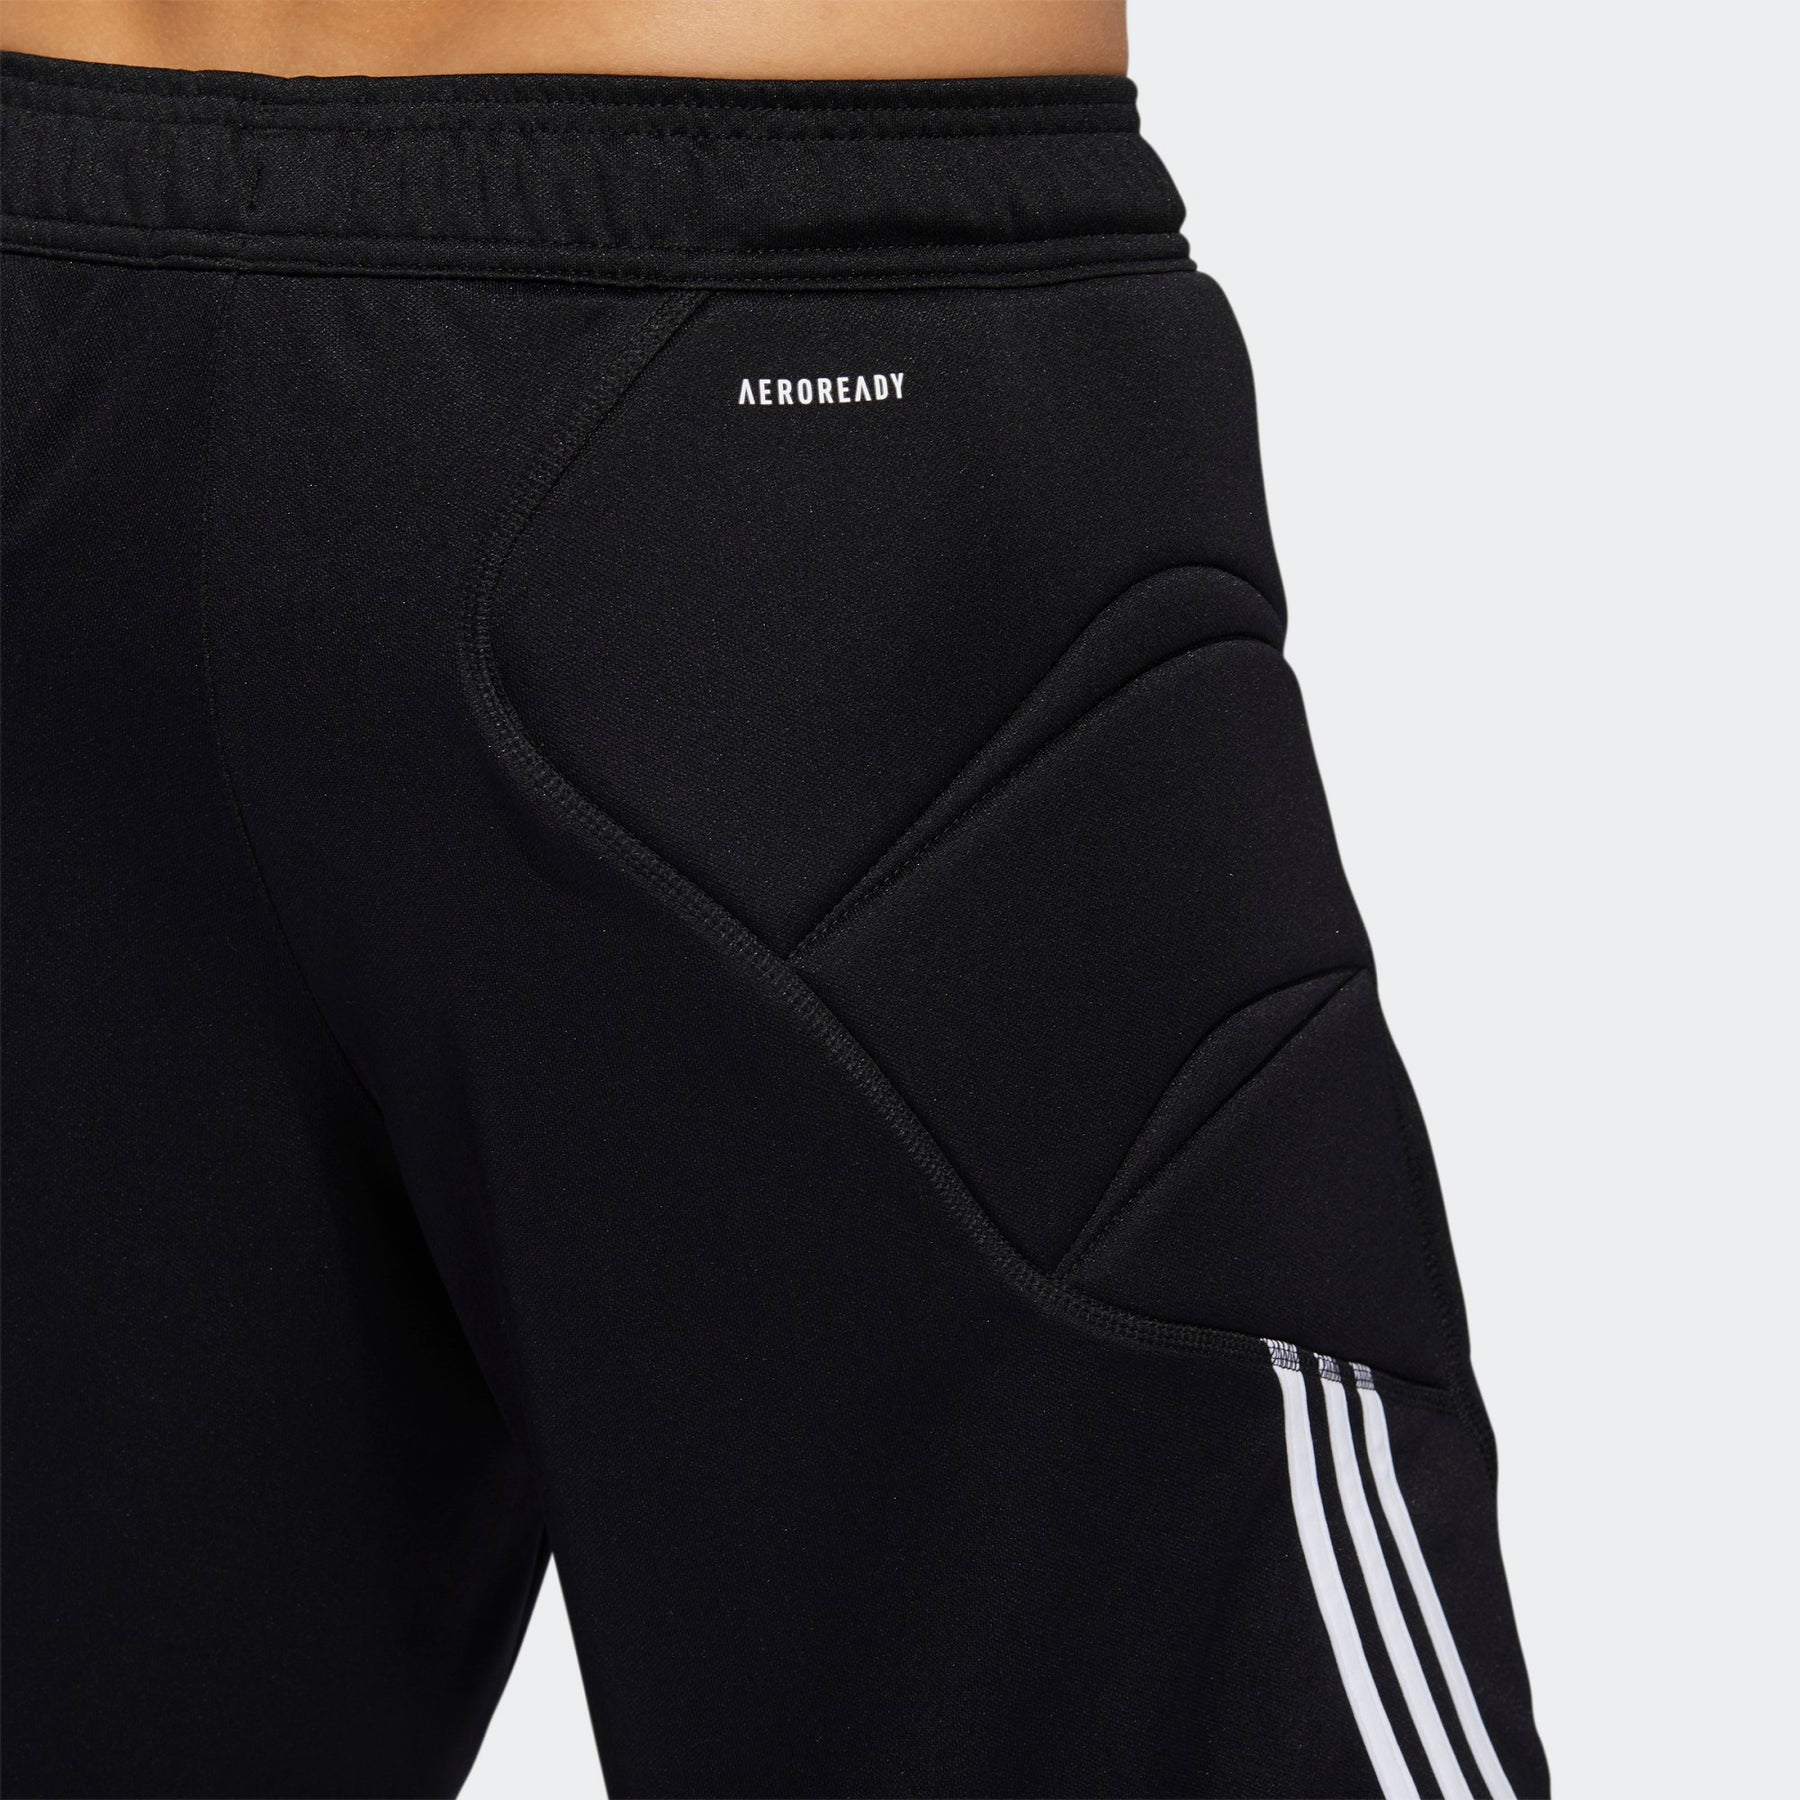 Adidas Tierro Goalkeeper Shorts- Black – Soccer Locker